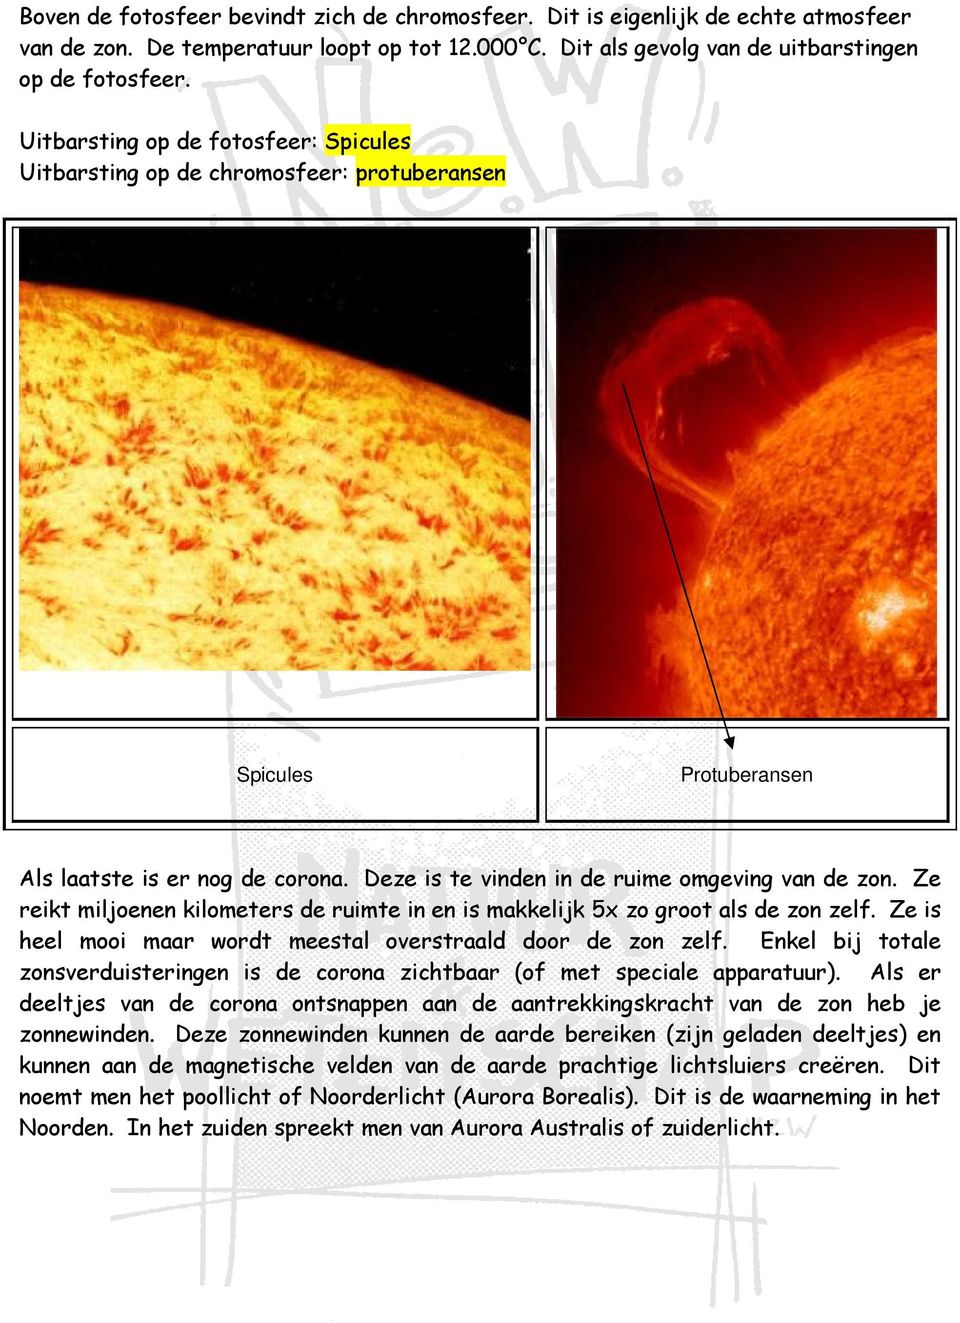 Ze reikt miljoenen kilometers de ruimte in en is makkelijk 5x zo groot als de zon zelf. Ze is heel mooi maar wordt meestal overstraald door de zon zelf.